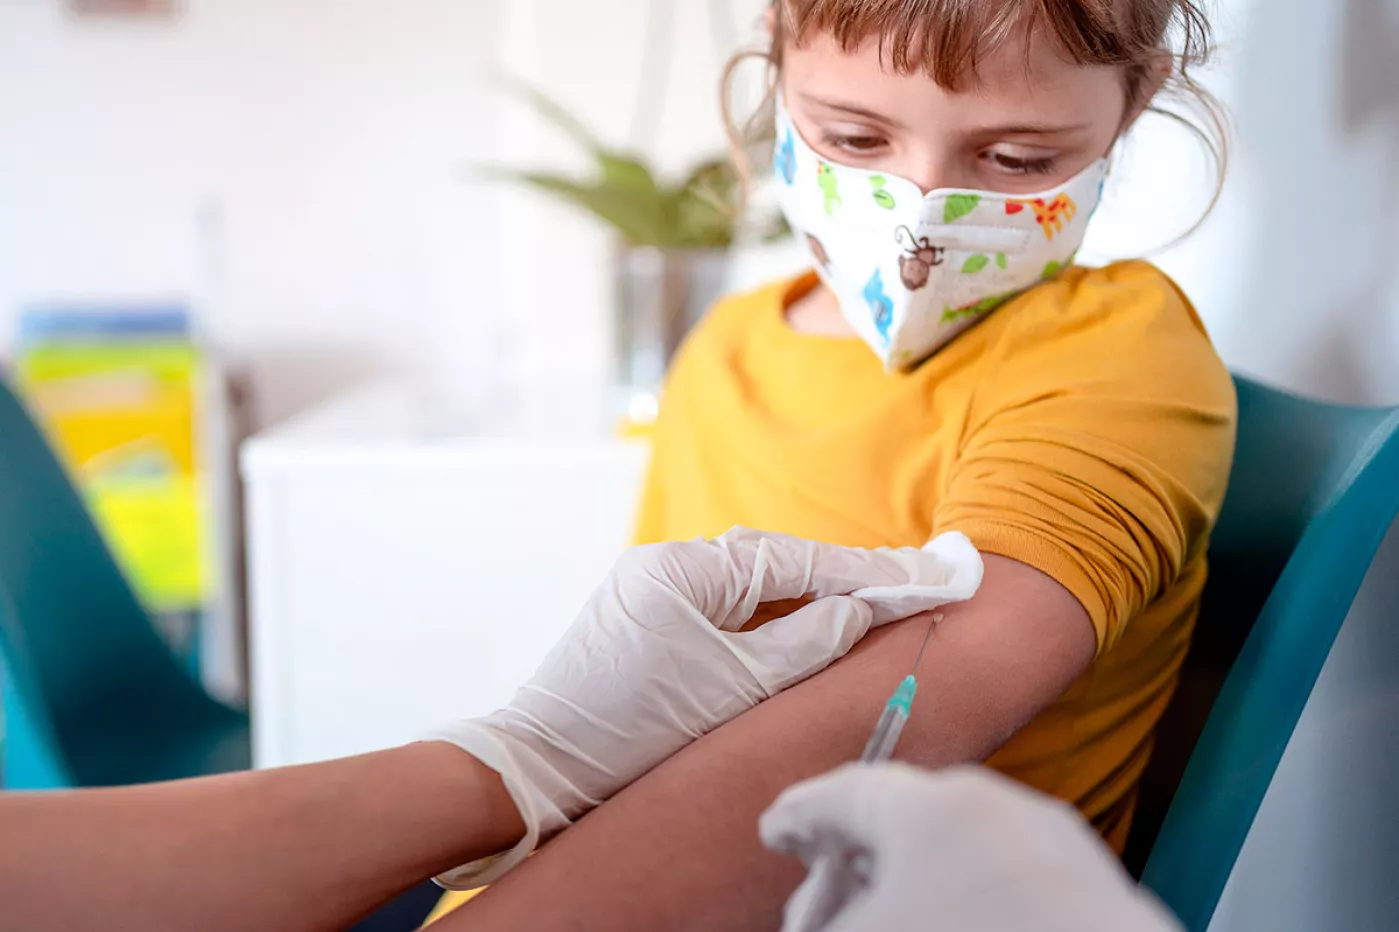 La EMA ha dado el visto bueno a la vacunación de niños de 12 a 15 años con el fármaco de Pfizer/BioNTech